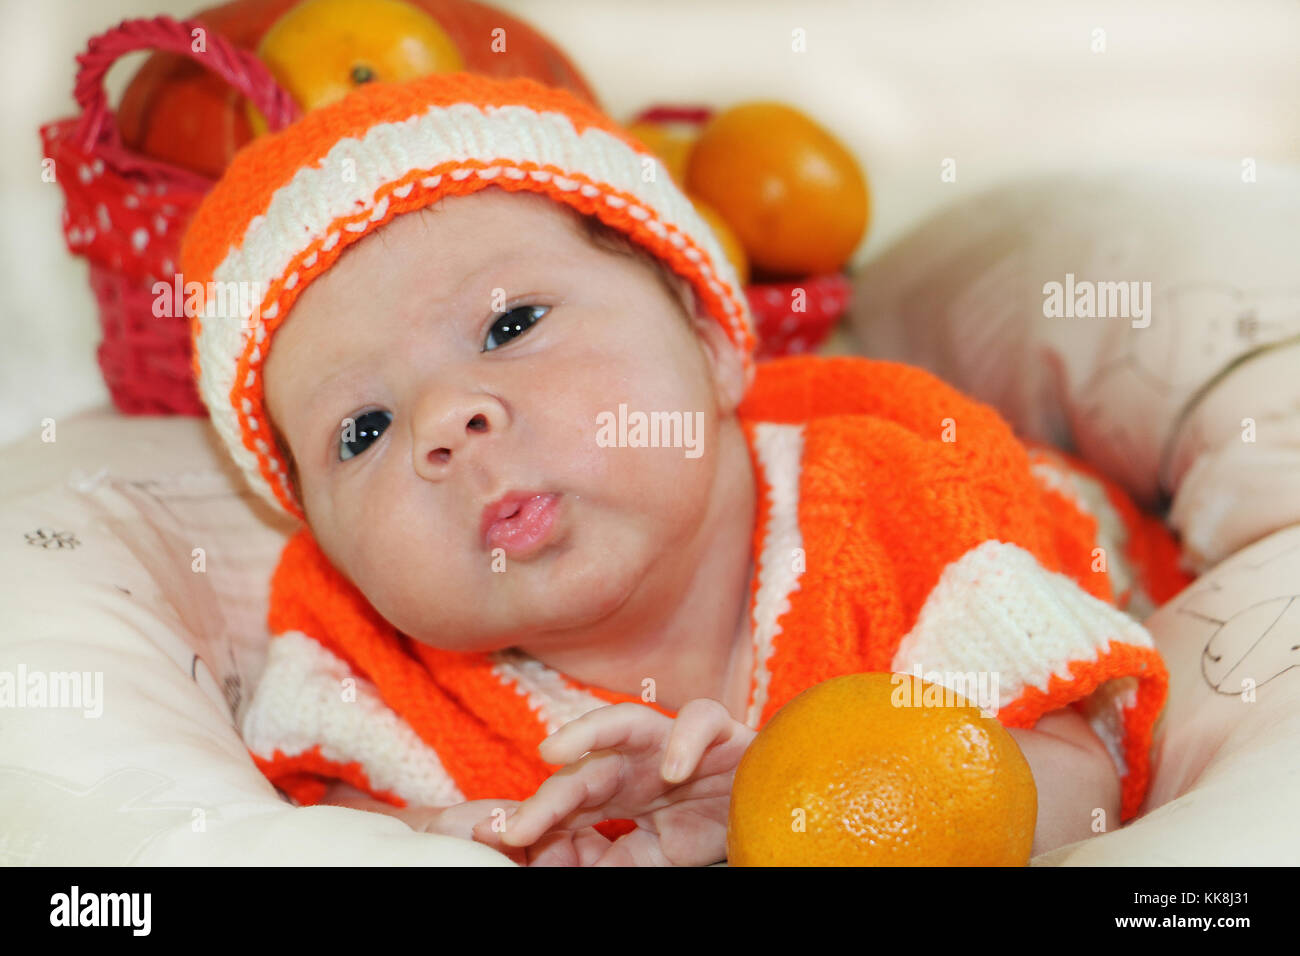 Baby di inviare aria kiss. Ritratto di neonato in arancione costume di maglia su coltre bianca e il cestello con le arance e zucca dietro di lui di inviare un Foto Stock